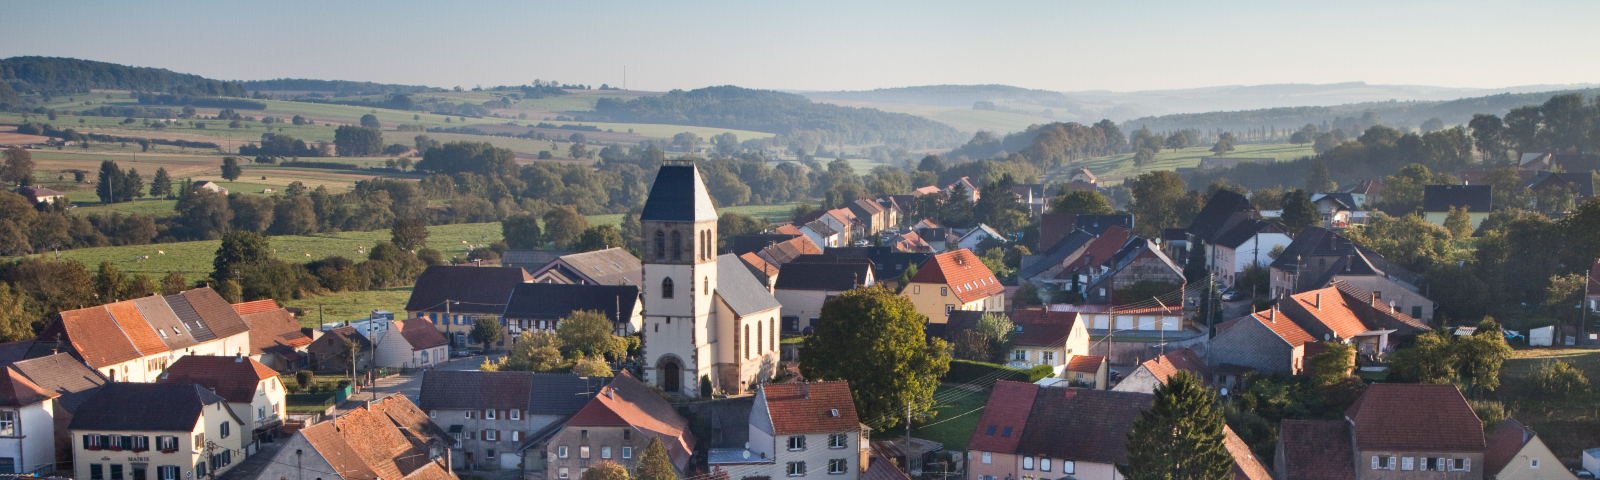 L'habitat et le patrimoine bâti en Alsace Bossue